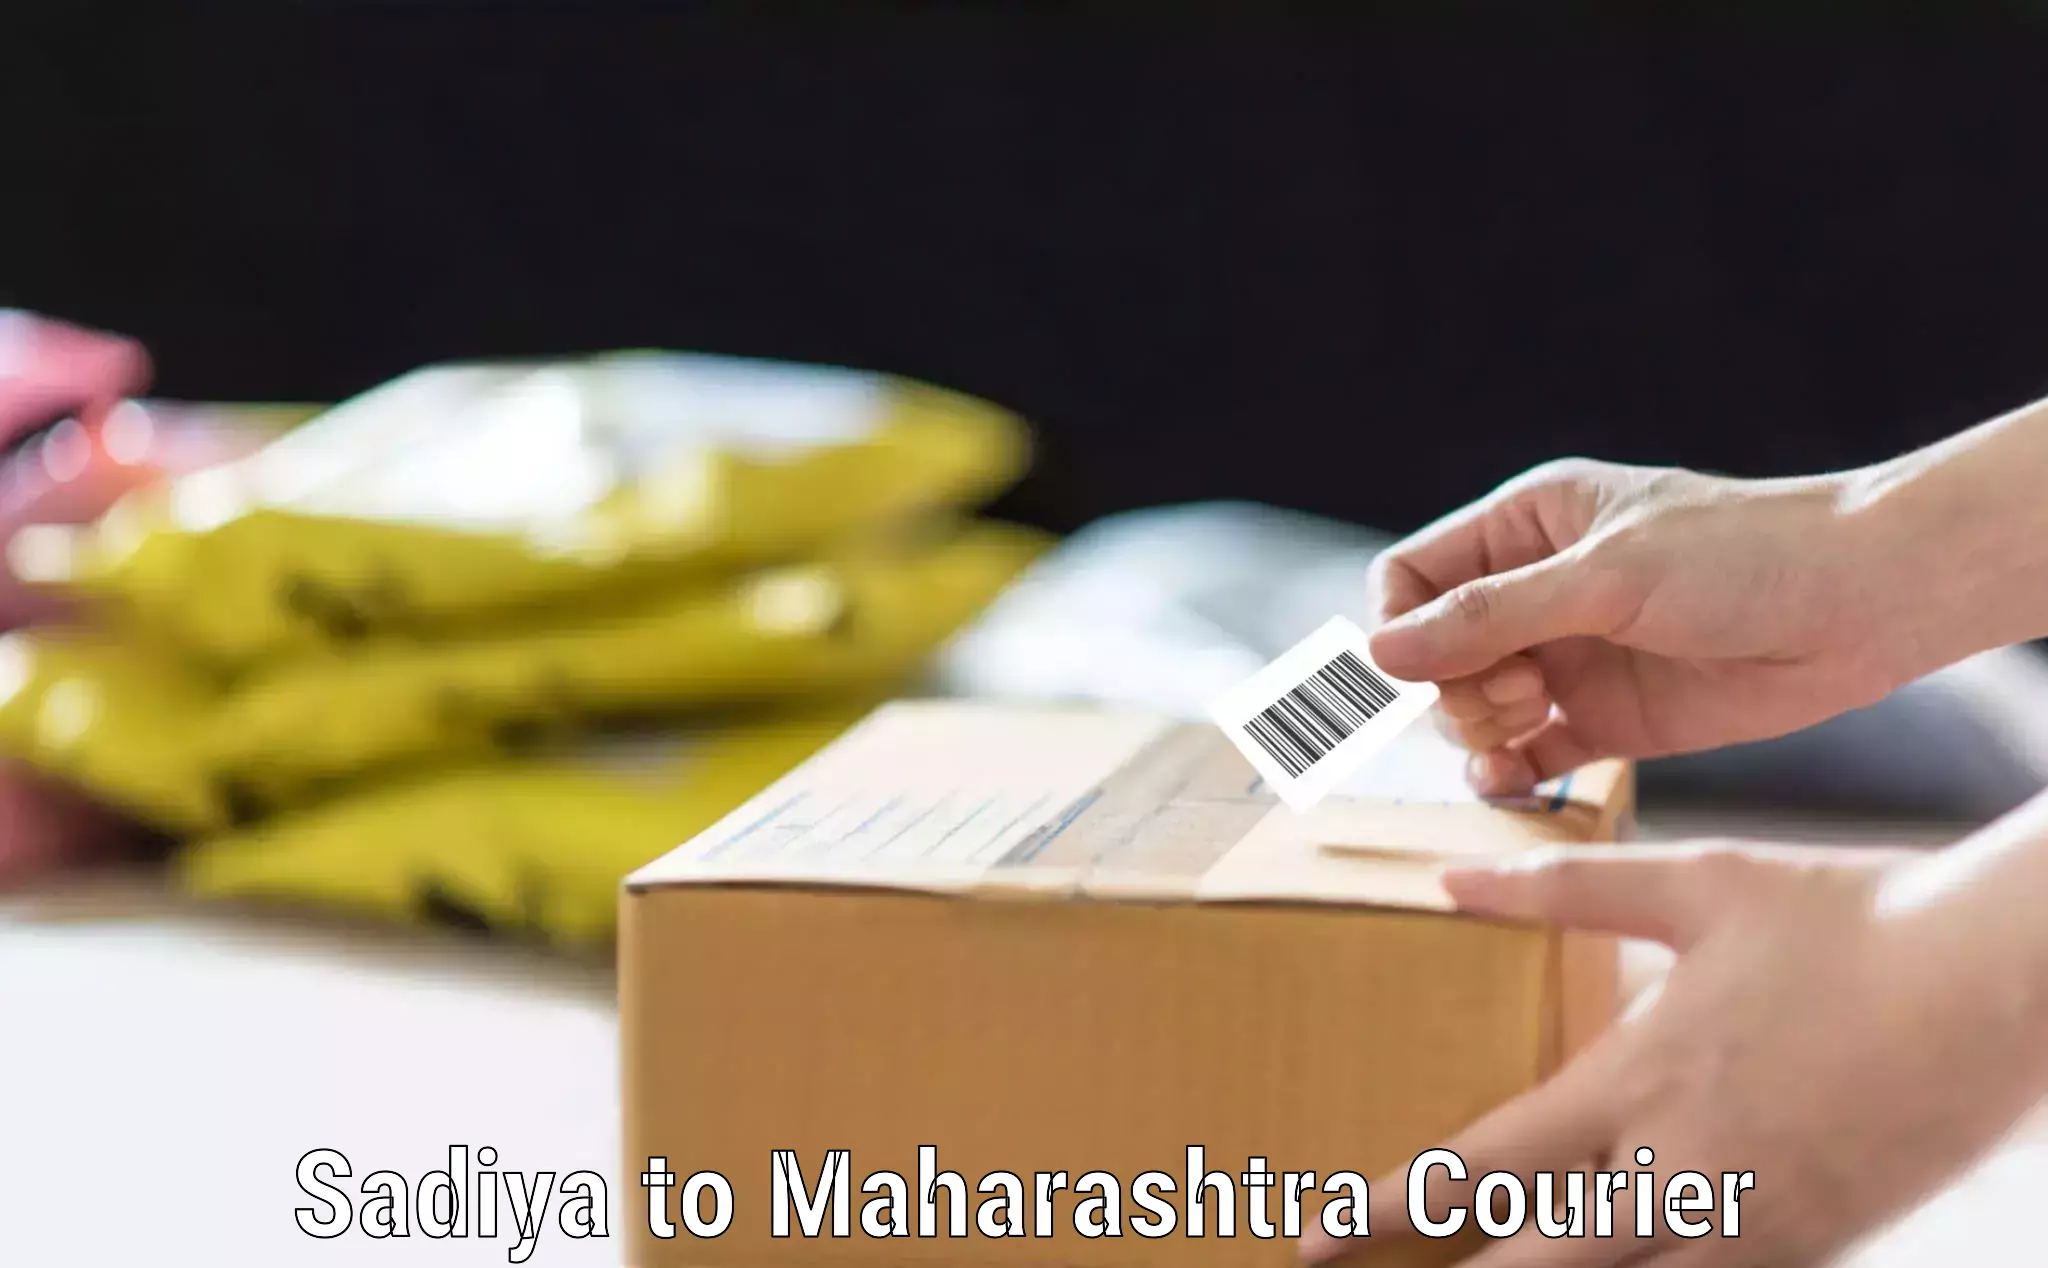 Door-to-door baggage service Sadiya to Maharashtra